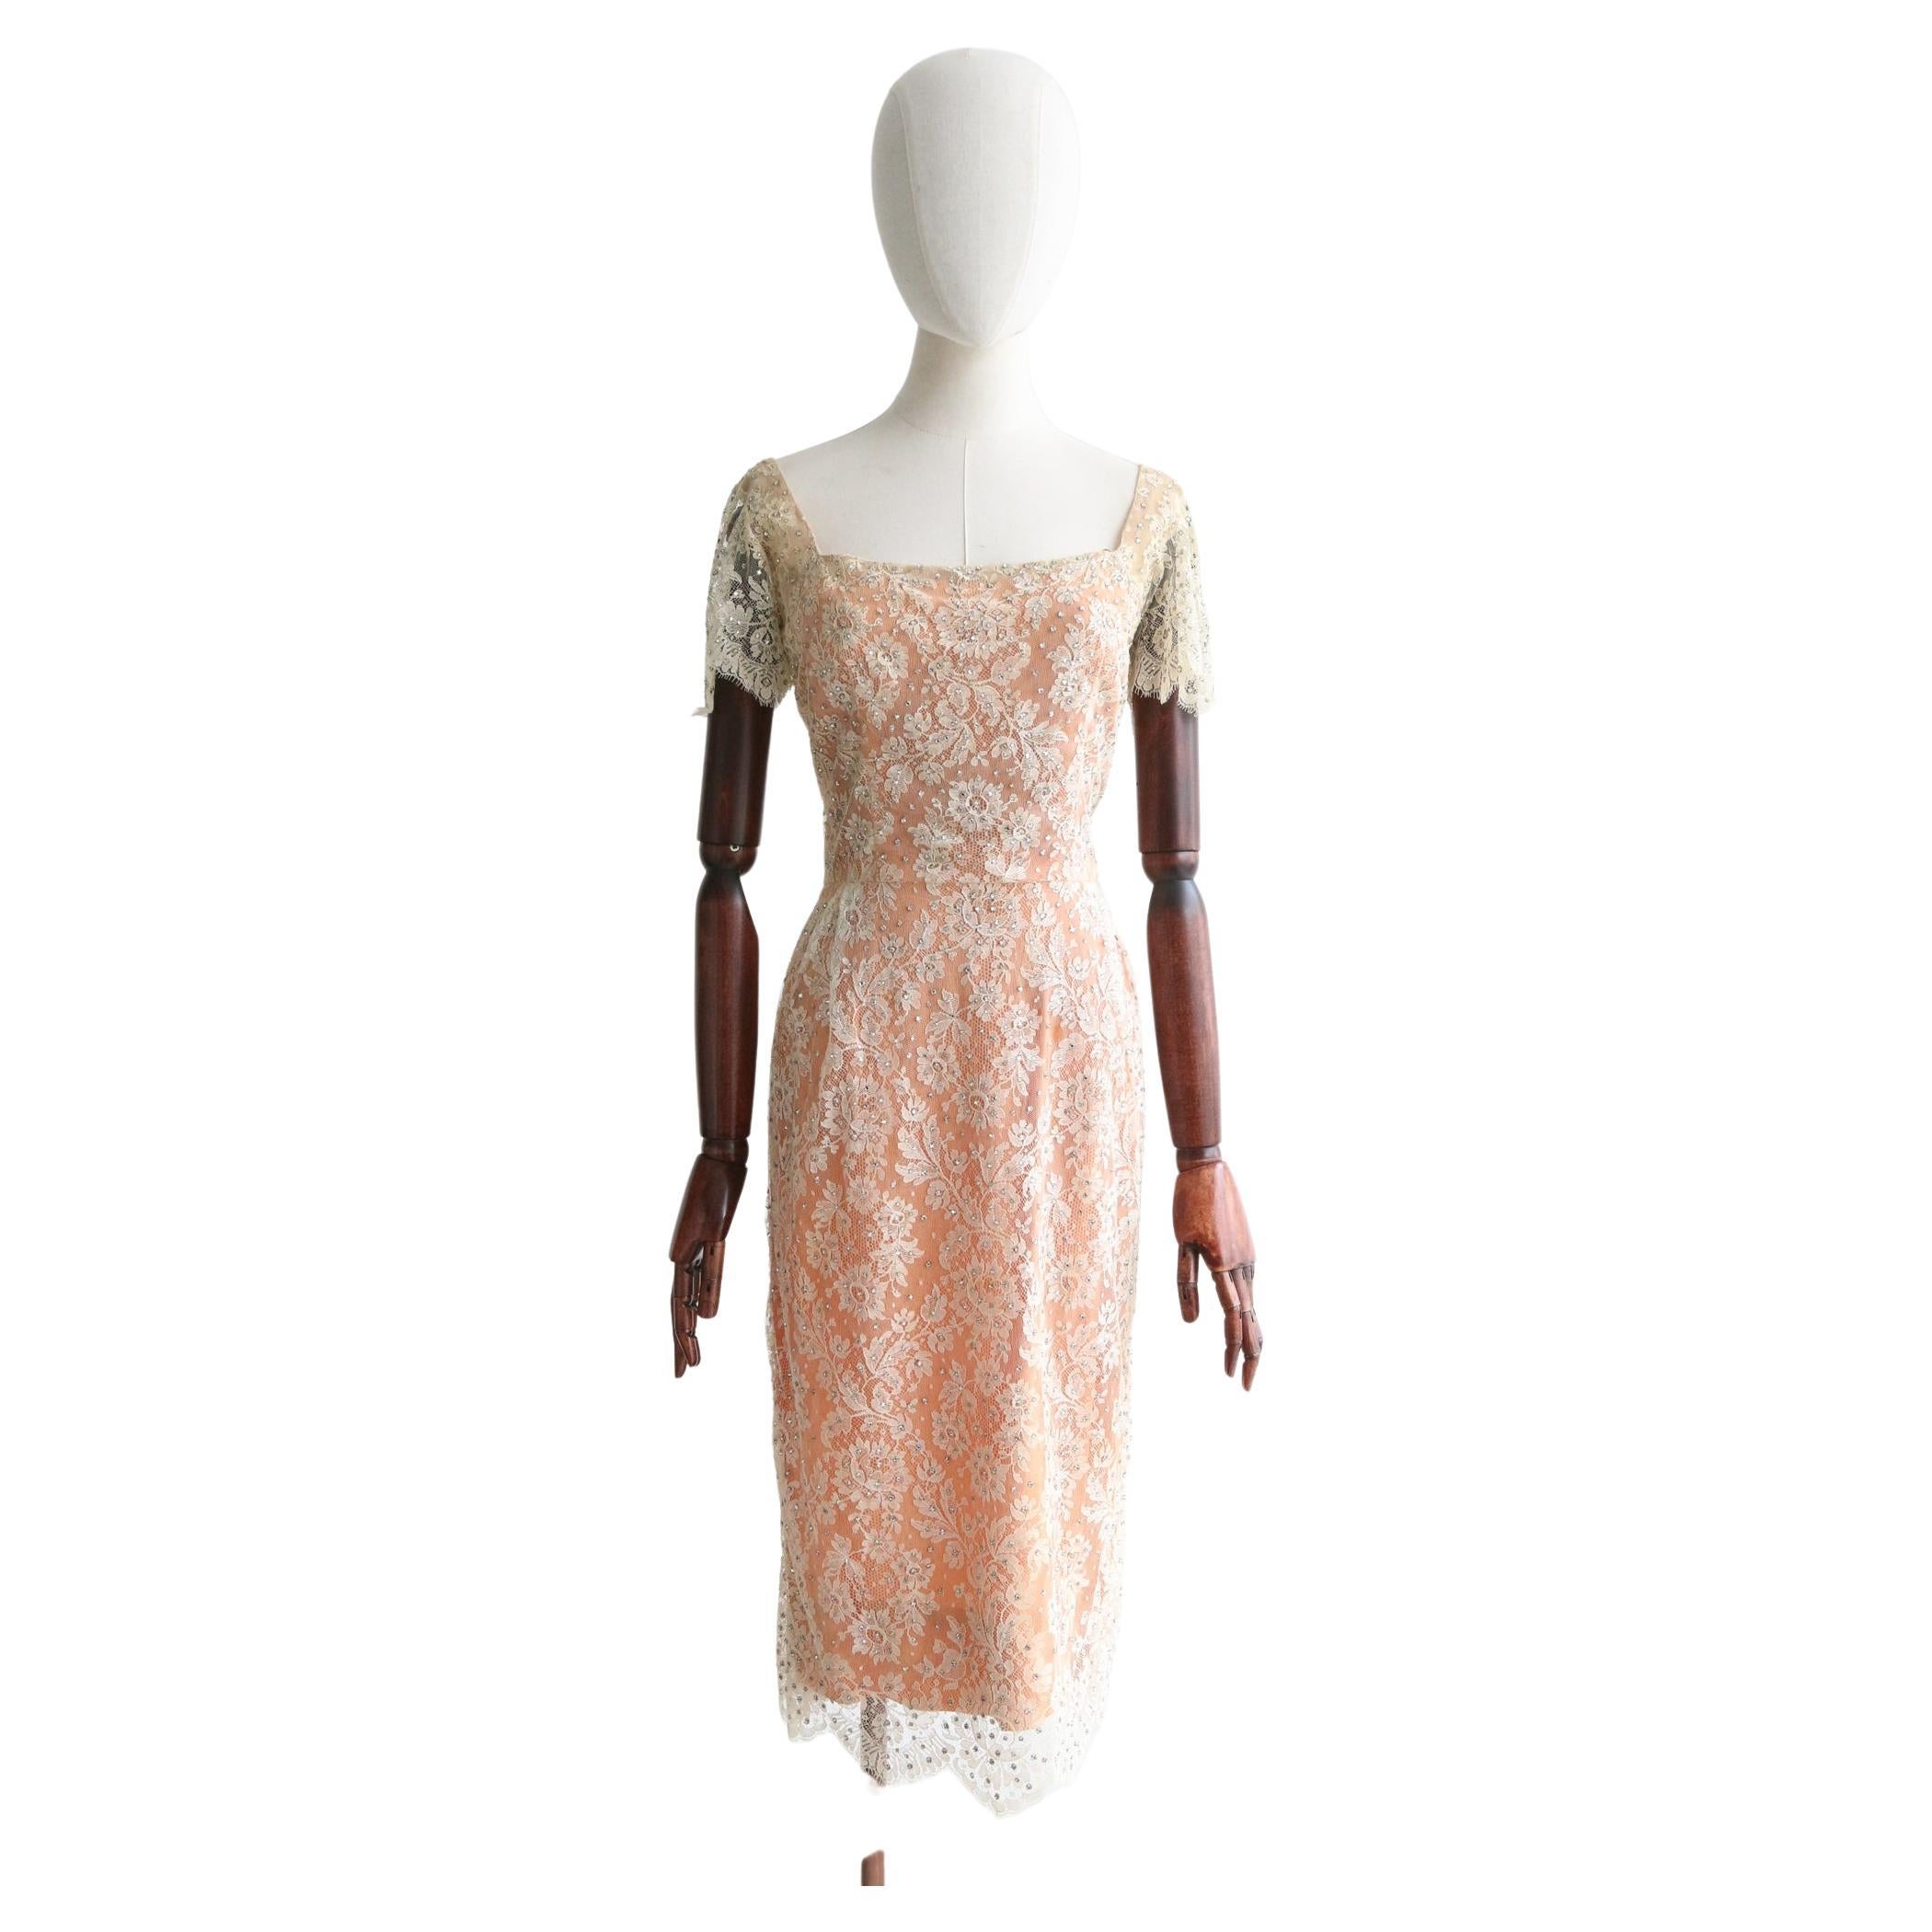 Vintage 1950's Howard Greer Lace and Rhinestone Embellished Dress UK 8 US 4